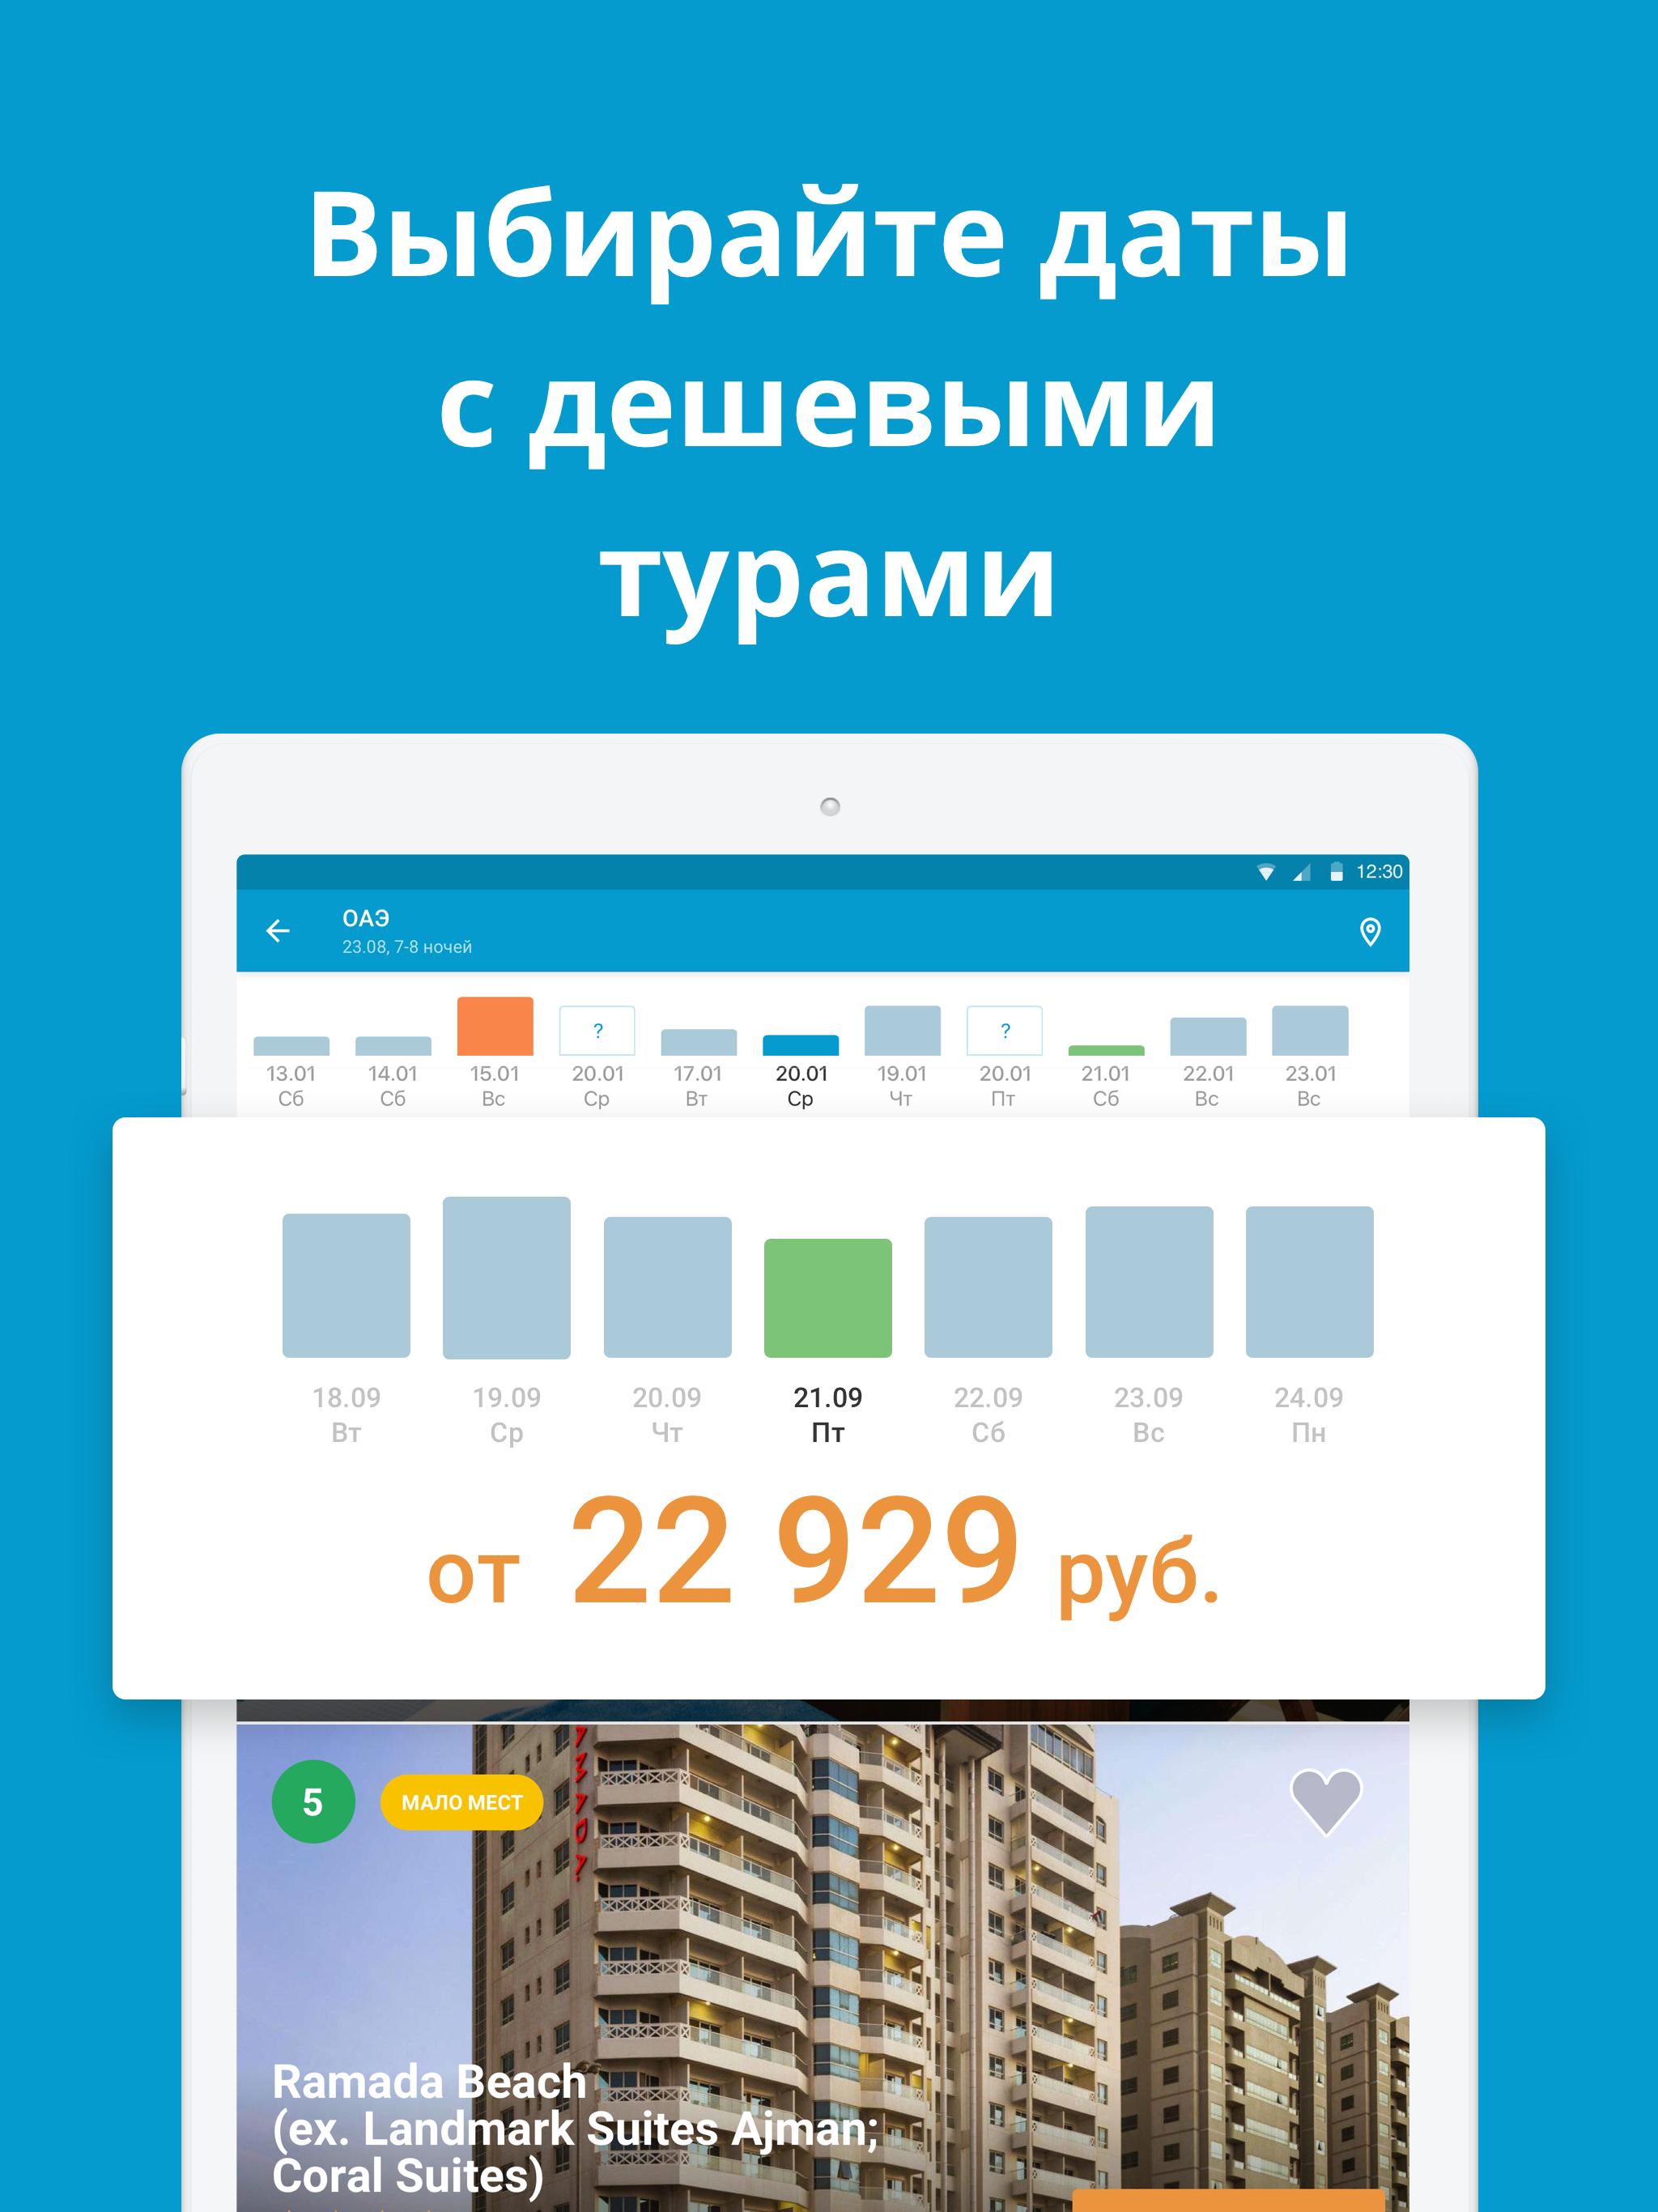 Travelata.ru Все горящие туры и путевки онлайн 3.6.7 Screenshot 14